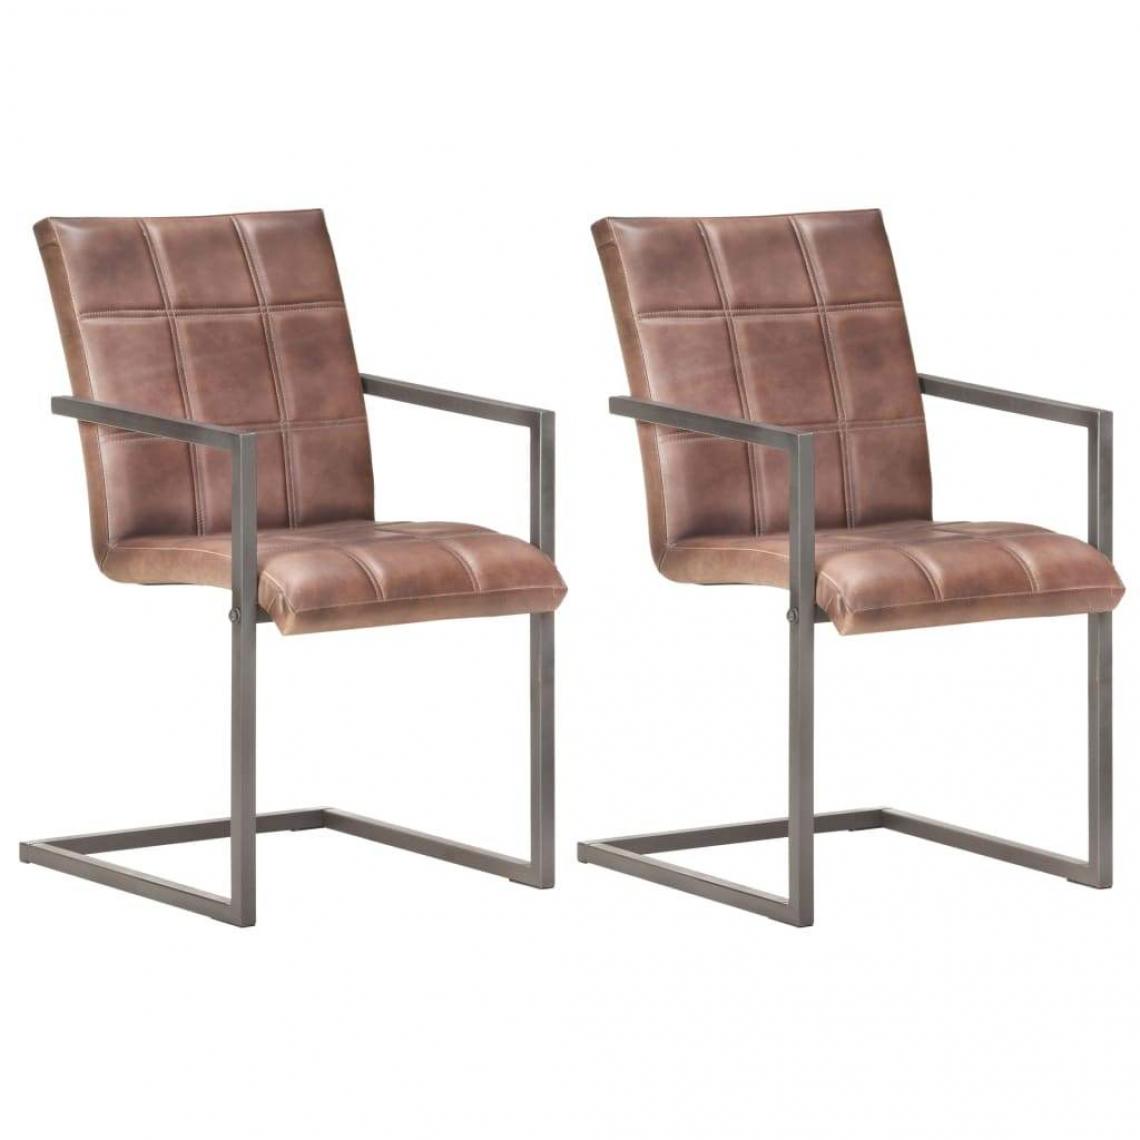 Decoshop26 - Lot de 2 chaises de salle à manger cuisine cantilever design rétro cuir véritable marron CDS020352 - Chaises